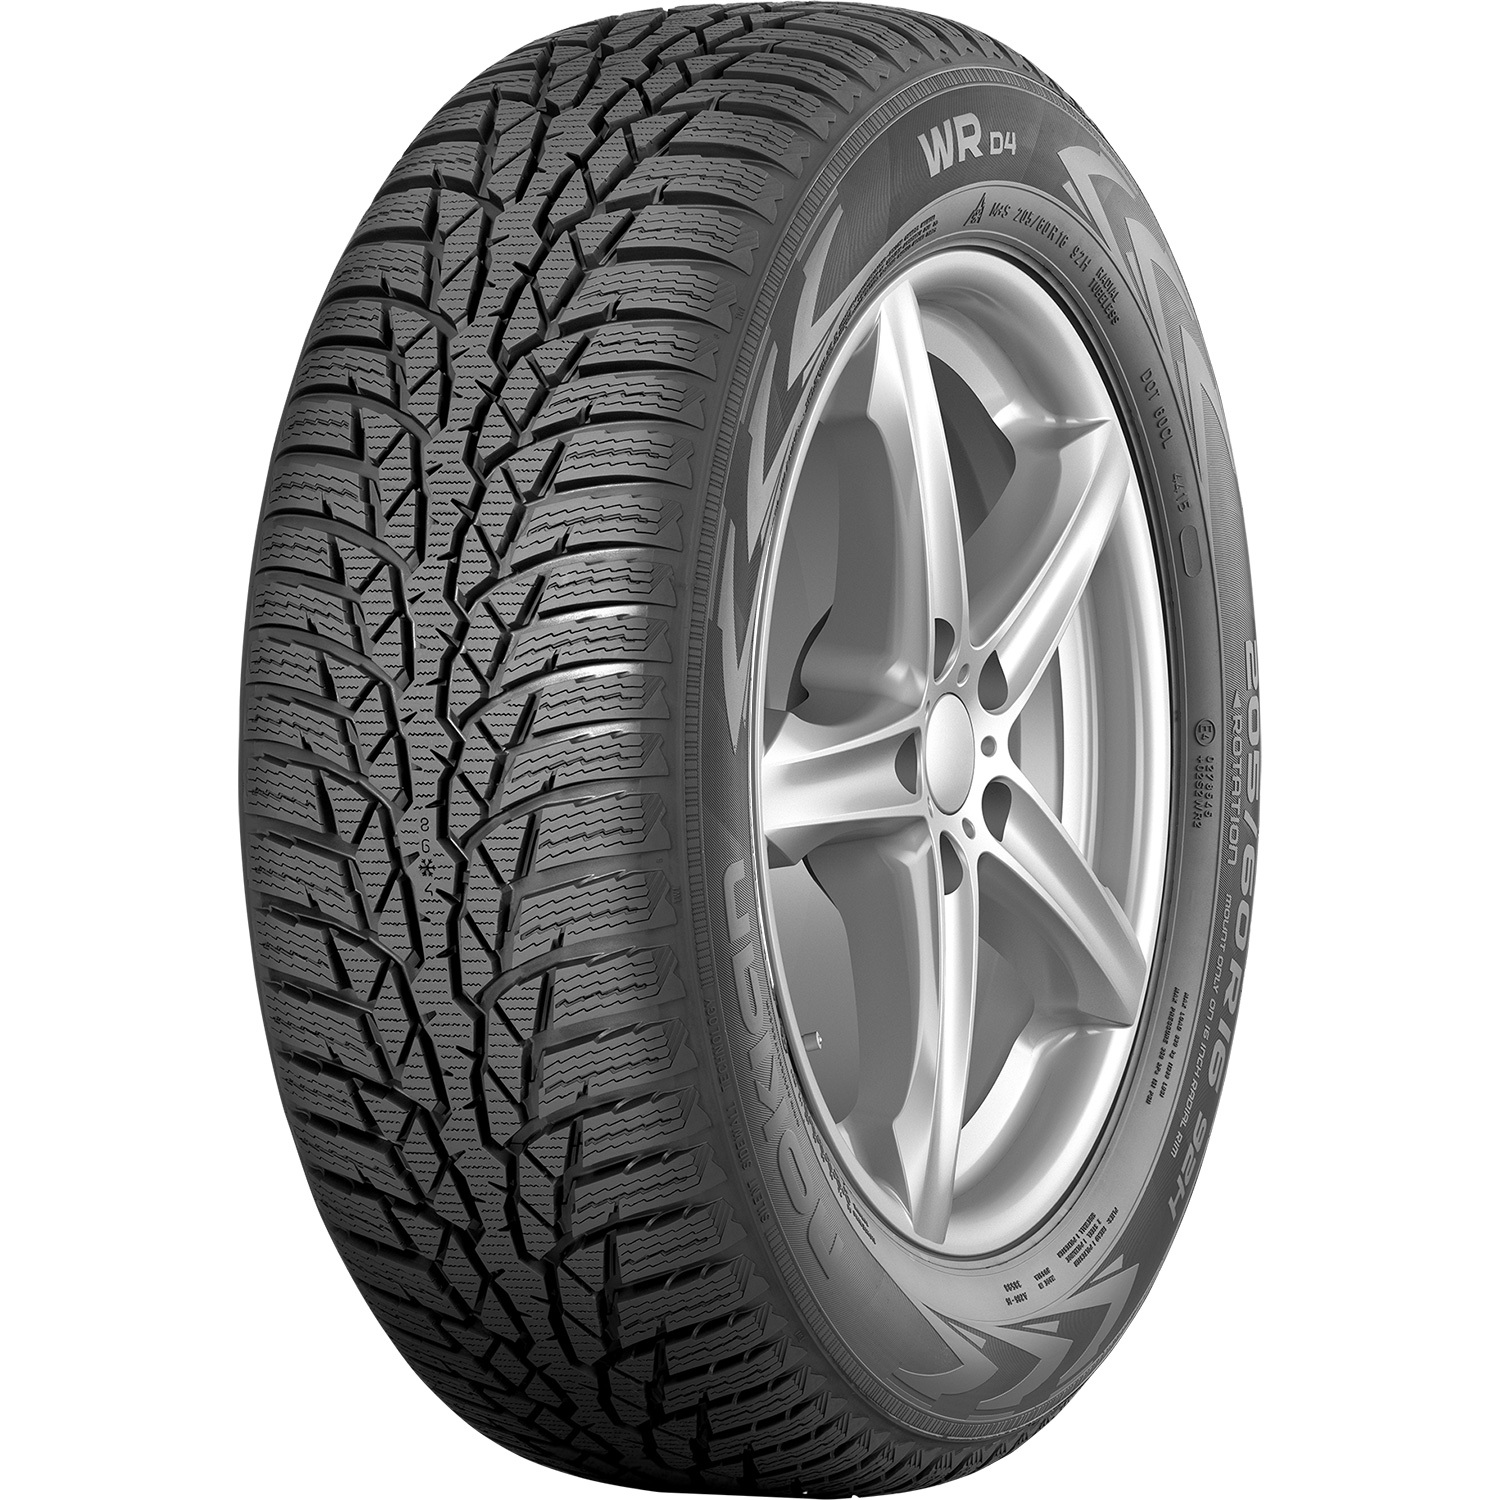 Автомобильная шина Nokian Tyres WR D4 195/55 R16 91H Без шипов